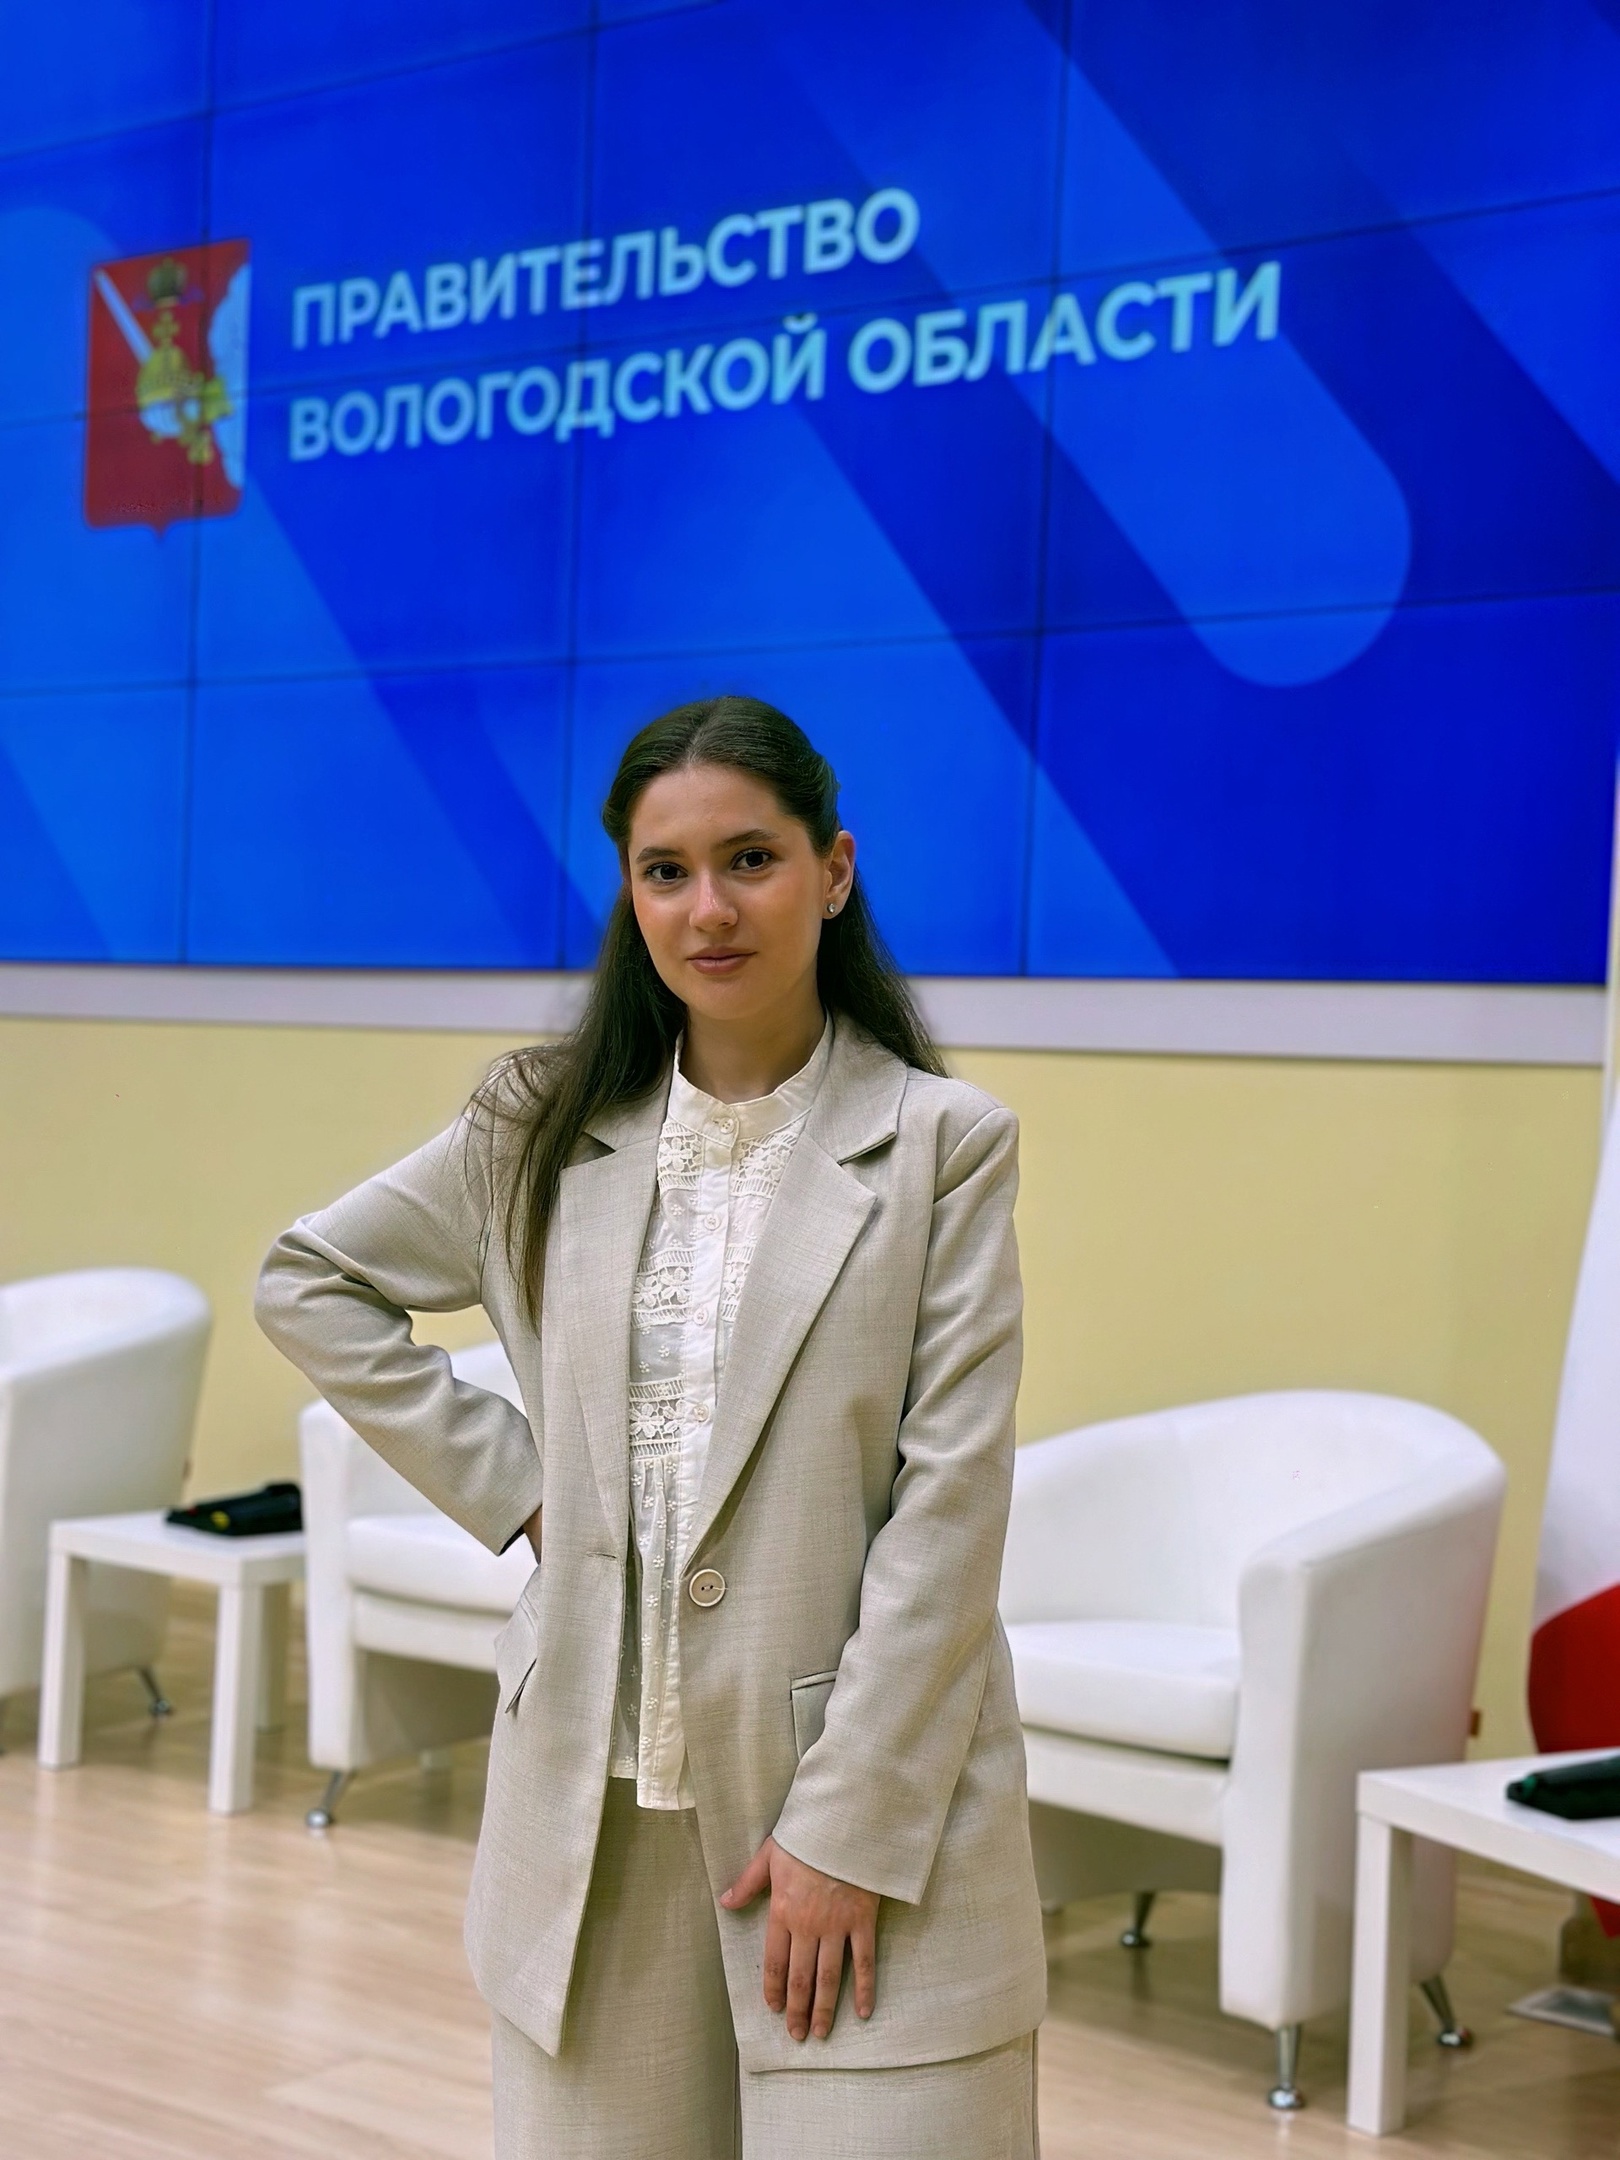 Поздравляем коллегу с победой на региональном этапе Всероссийского конкурса профессионального мастерства в сфере социального обслуживания!